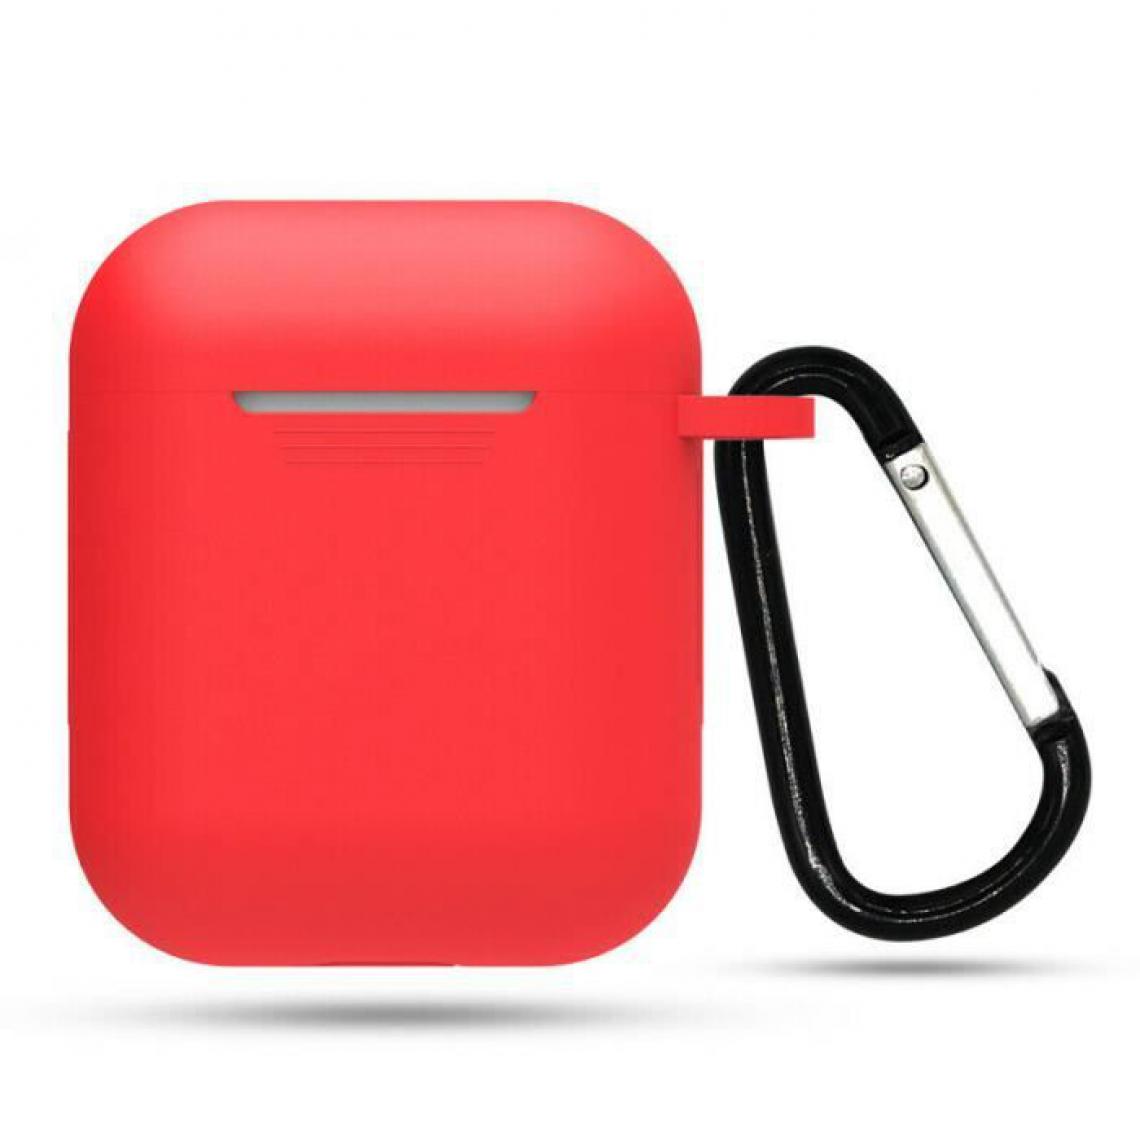 Tikawi - Tikawi Coque pour Apple Airpod Silicone Rouge + Mousqueton noir [Gel Souple] [Haute Protection] [Anti-Rayure] - Coque, étui smartphone